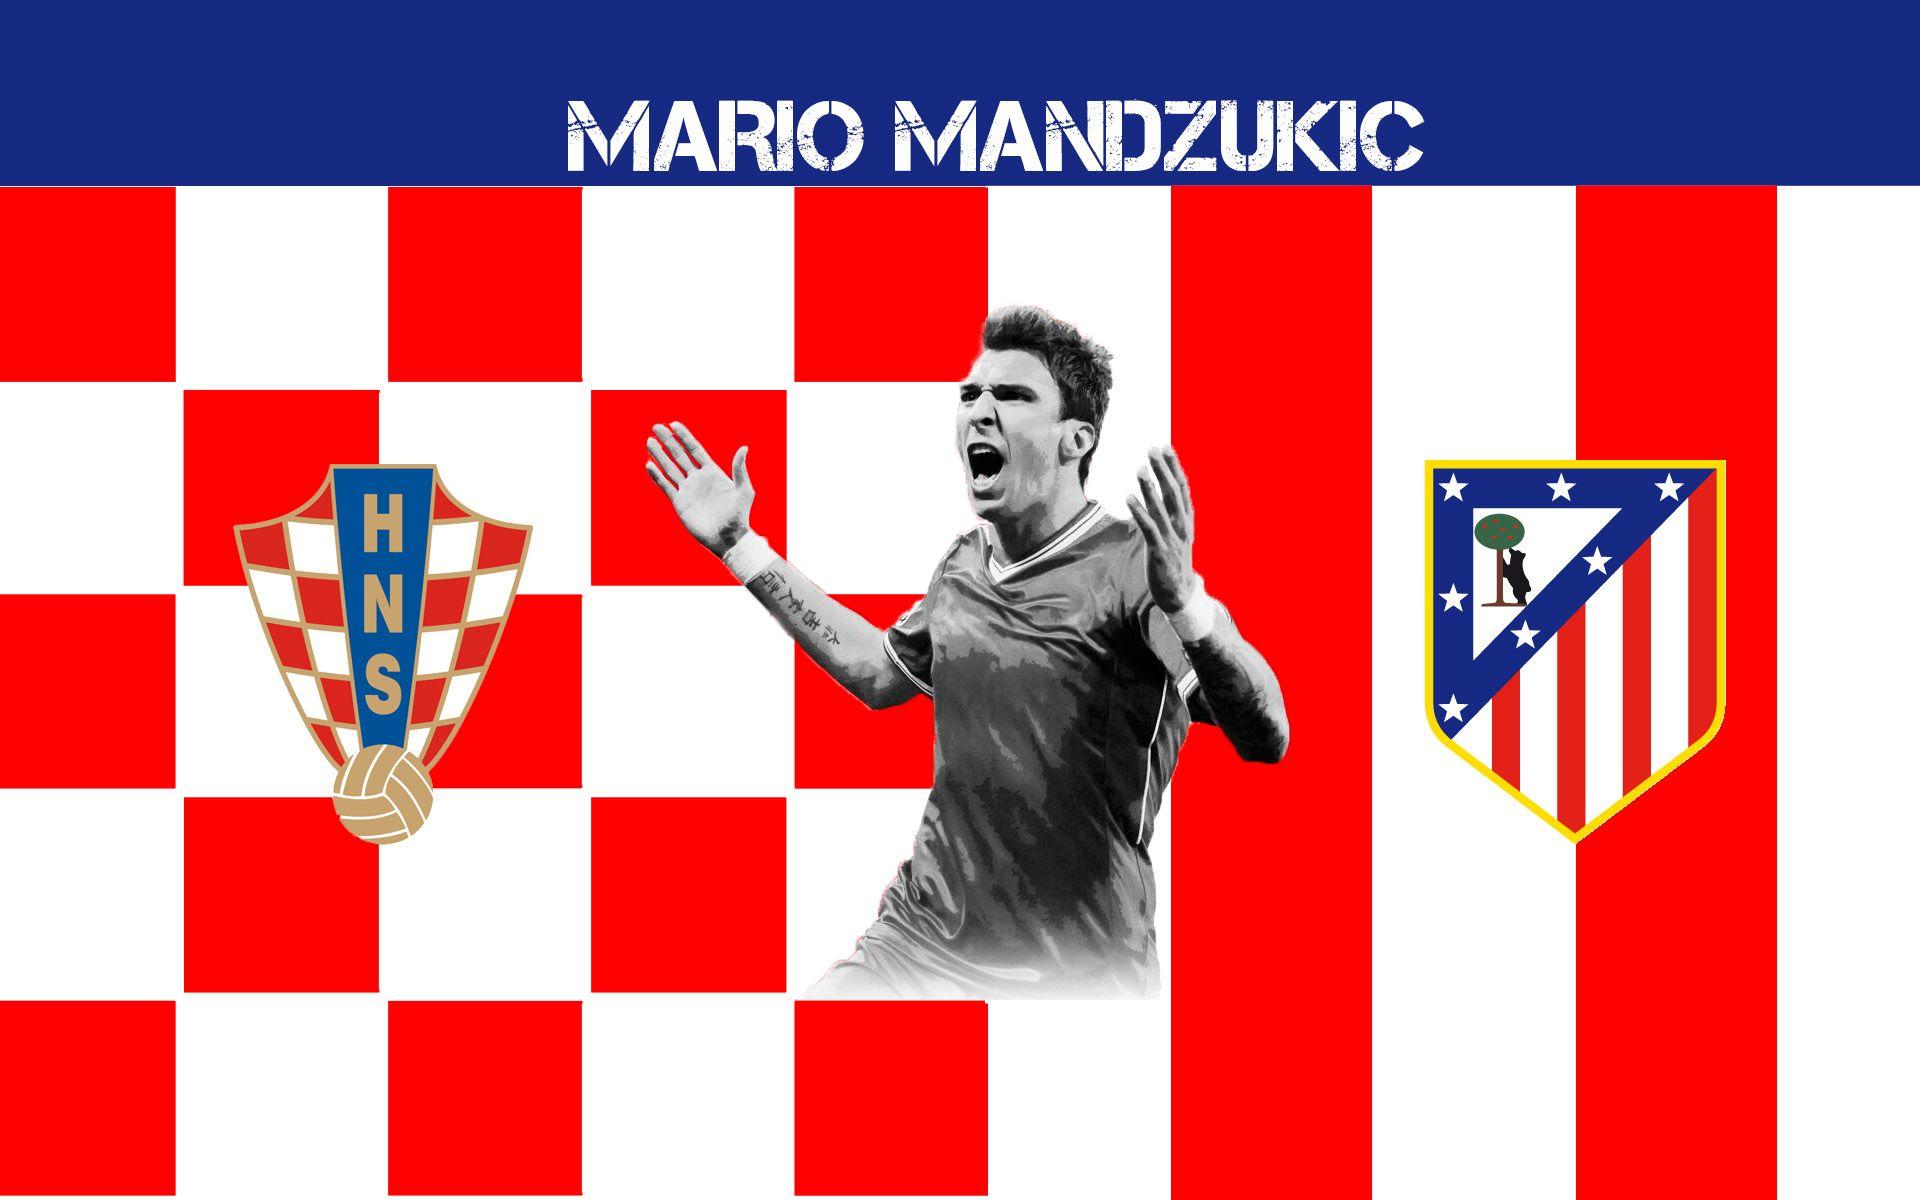 Mario Mandzukic 2014 Atletico De Madrid Wallpaper Wide or HD